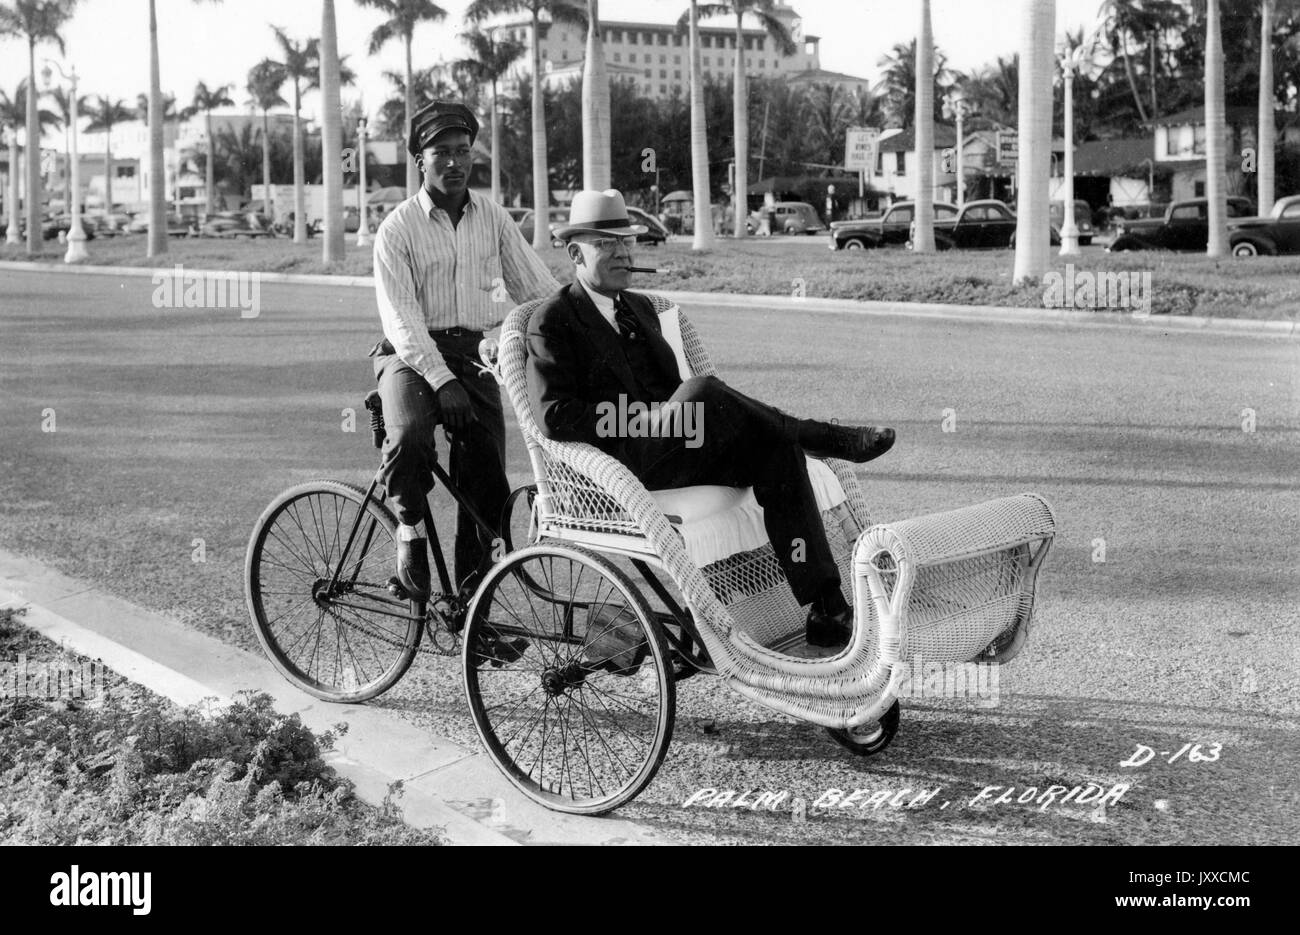 Ganzkörperporträt eines afroamerikanischen Mannes auf einer Rikscha, der einen reifen weißen Mann mit einem dunklen Anzug und einem Hut, mit einer Zigarre im Mund, drückt, der afroamerikanische Mann trägt ein gestreiftes Hemd und einen dunklen Hut, Den Mann auf das Gras von Palmen in Palm Beach, Florida, 1929 schieben. Stockfoto